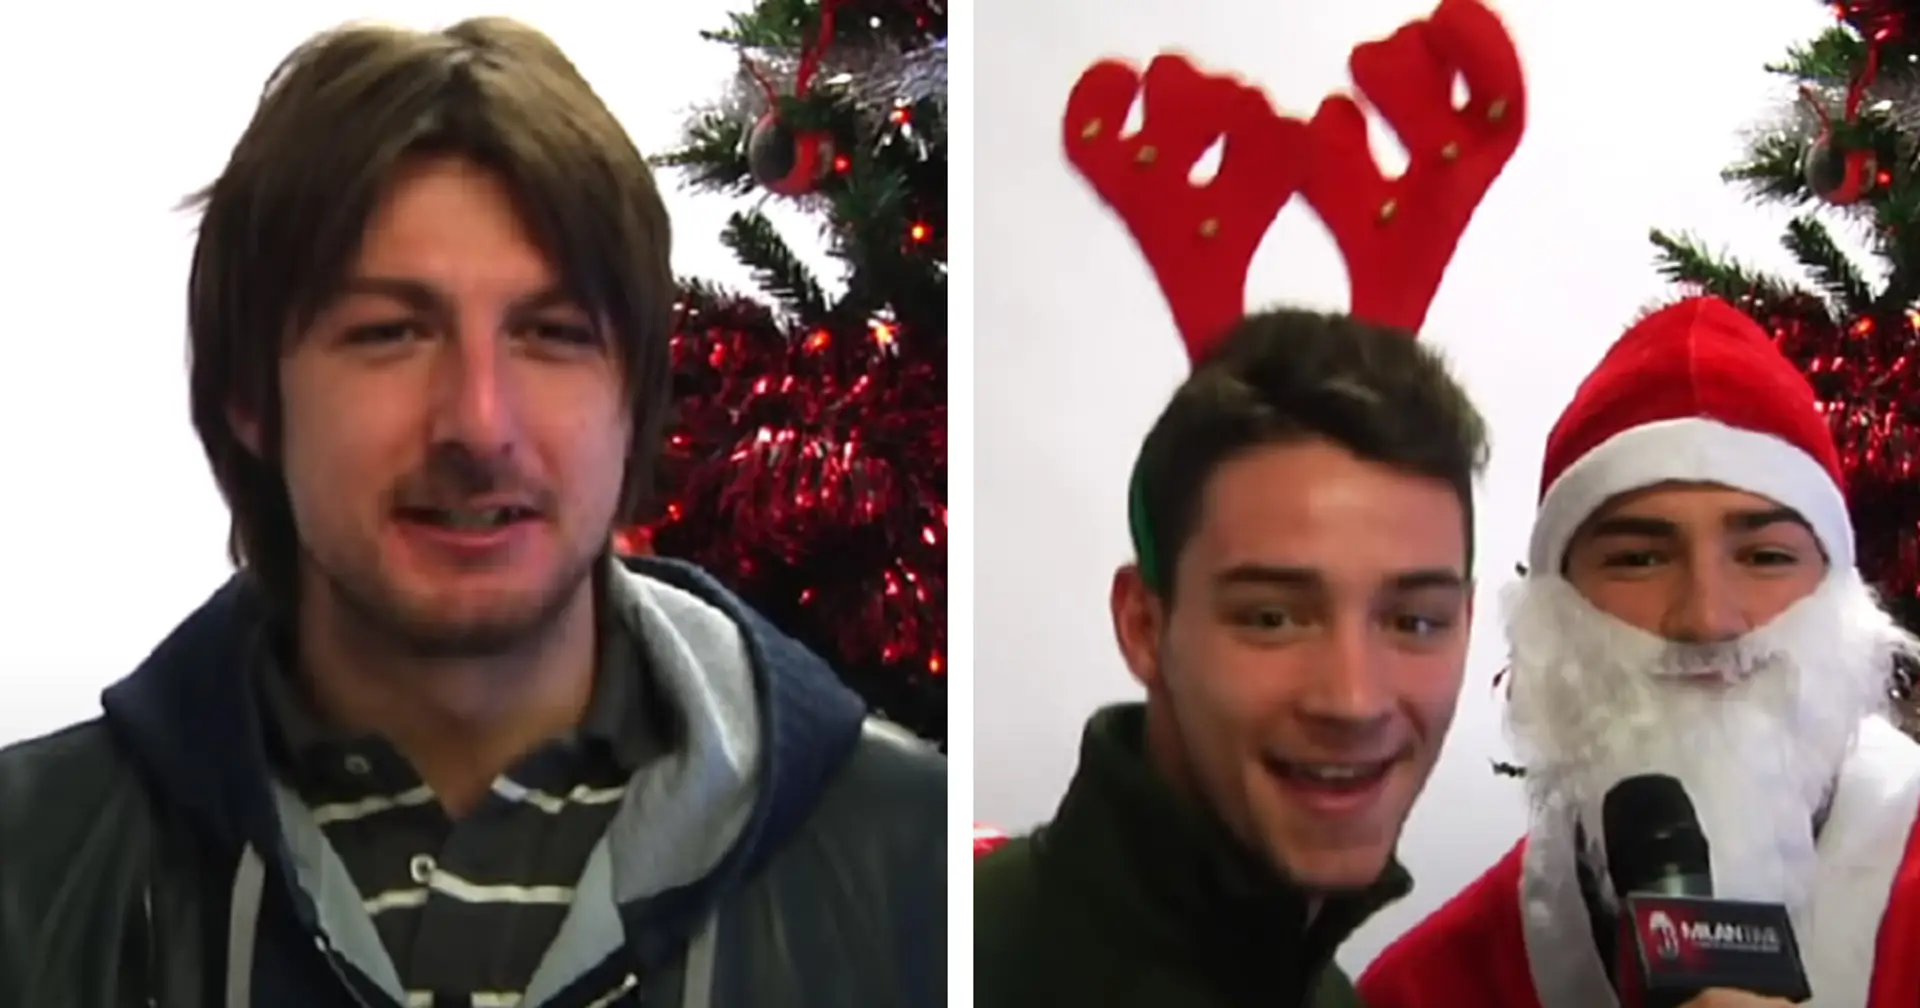 Acerbi, De Sciglio e non solo: il video di Natale 2012 sblocca (amari) ricordi ai tifosi del Milan